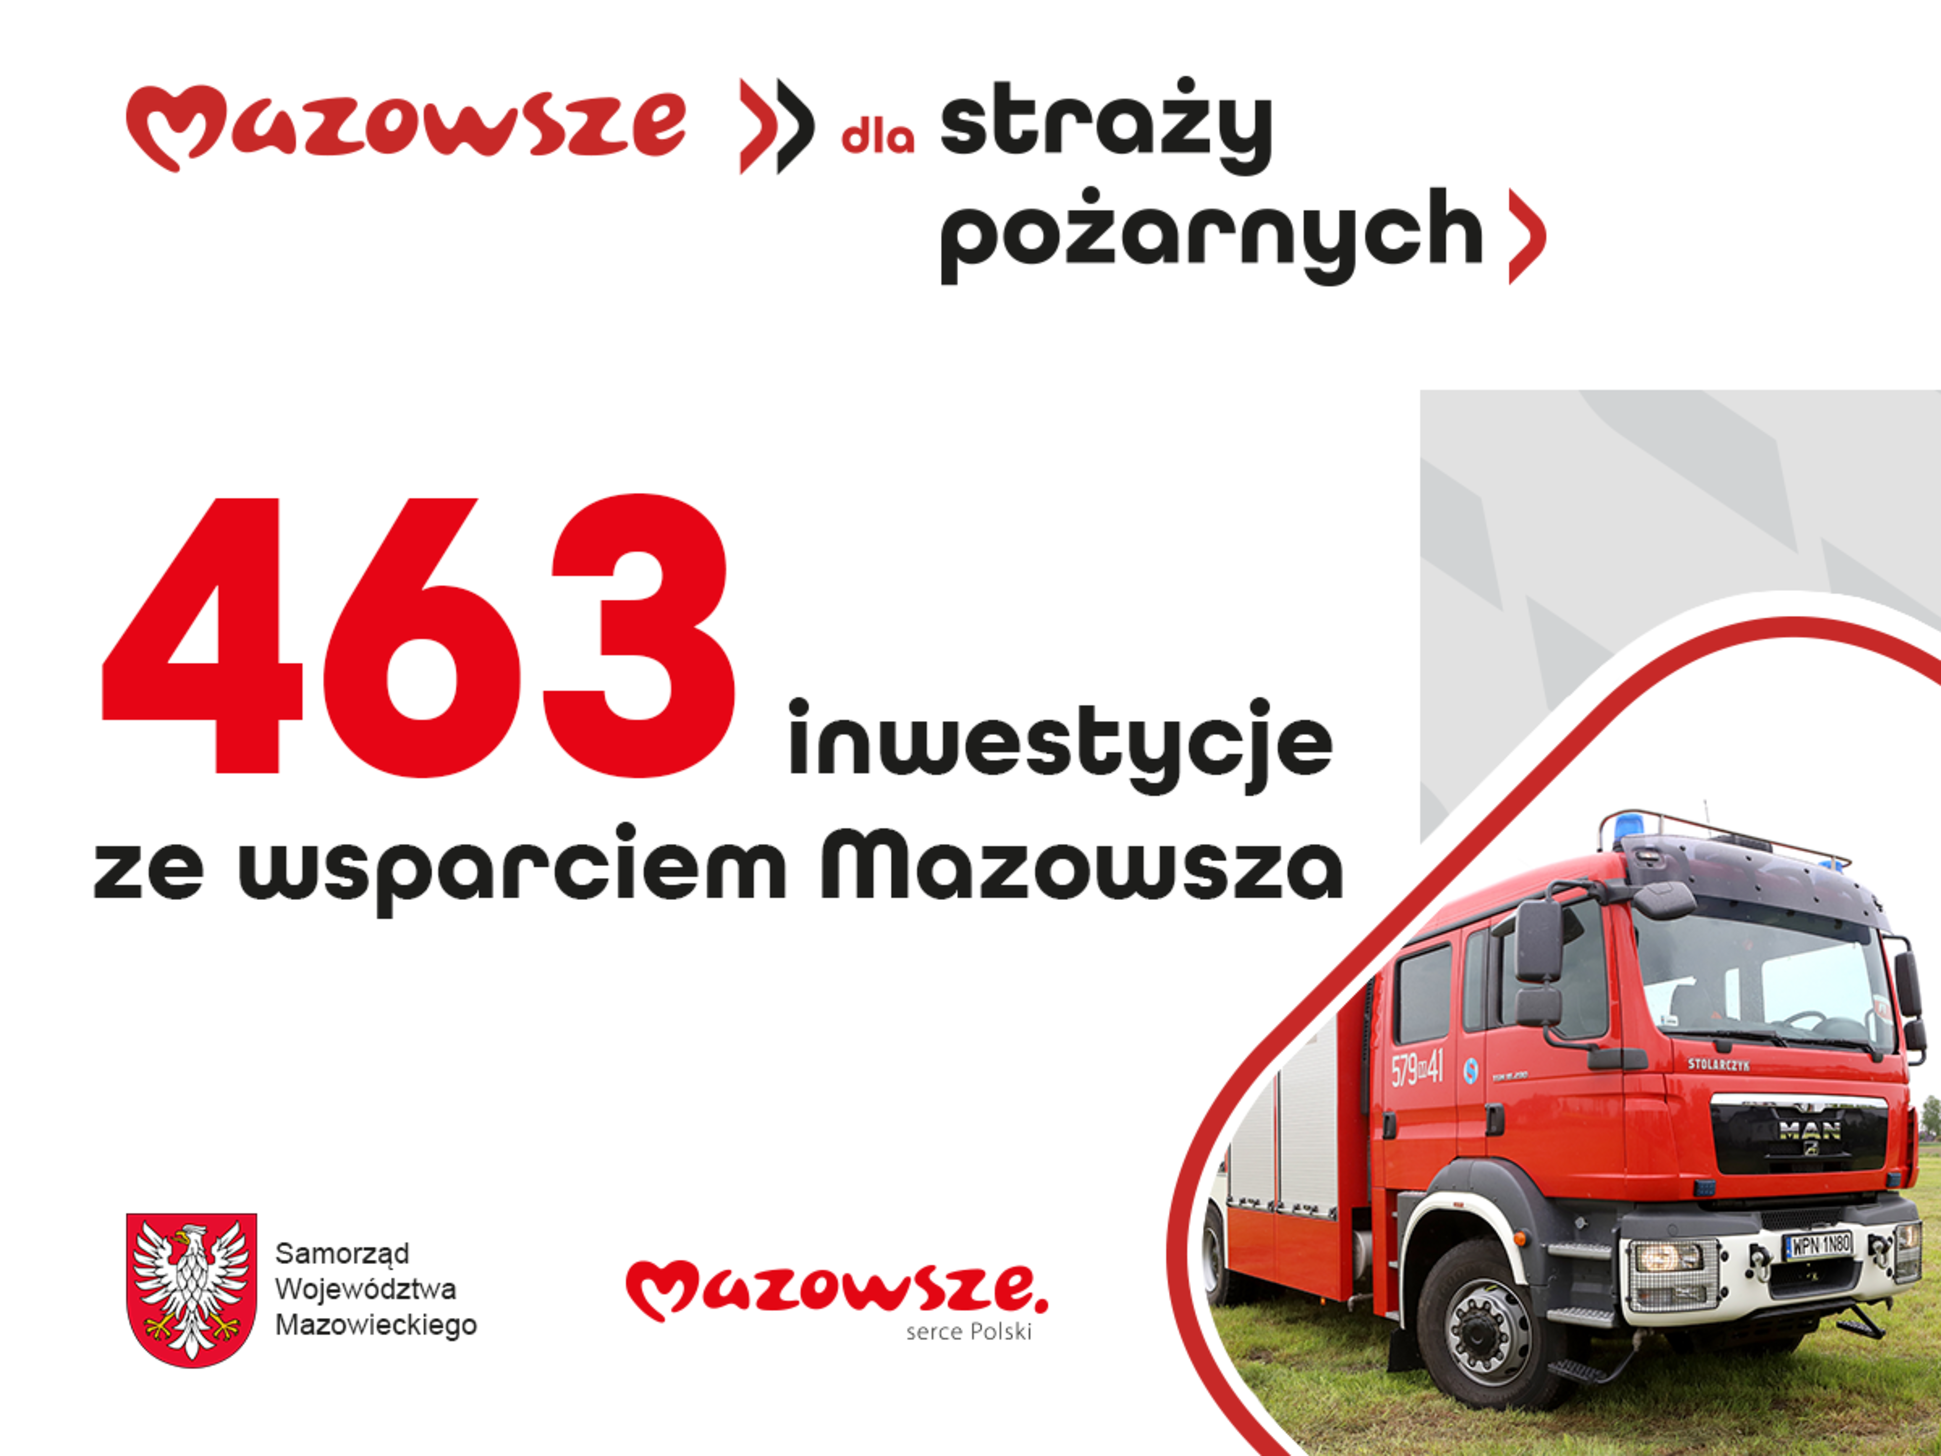 Logo Mazowsza i napis "463 inwestycje ze wsparciem Mazowsza".